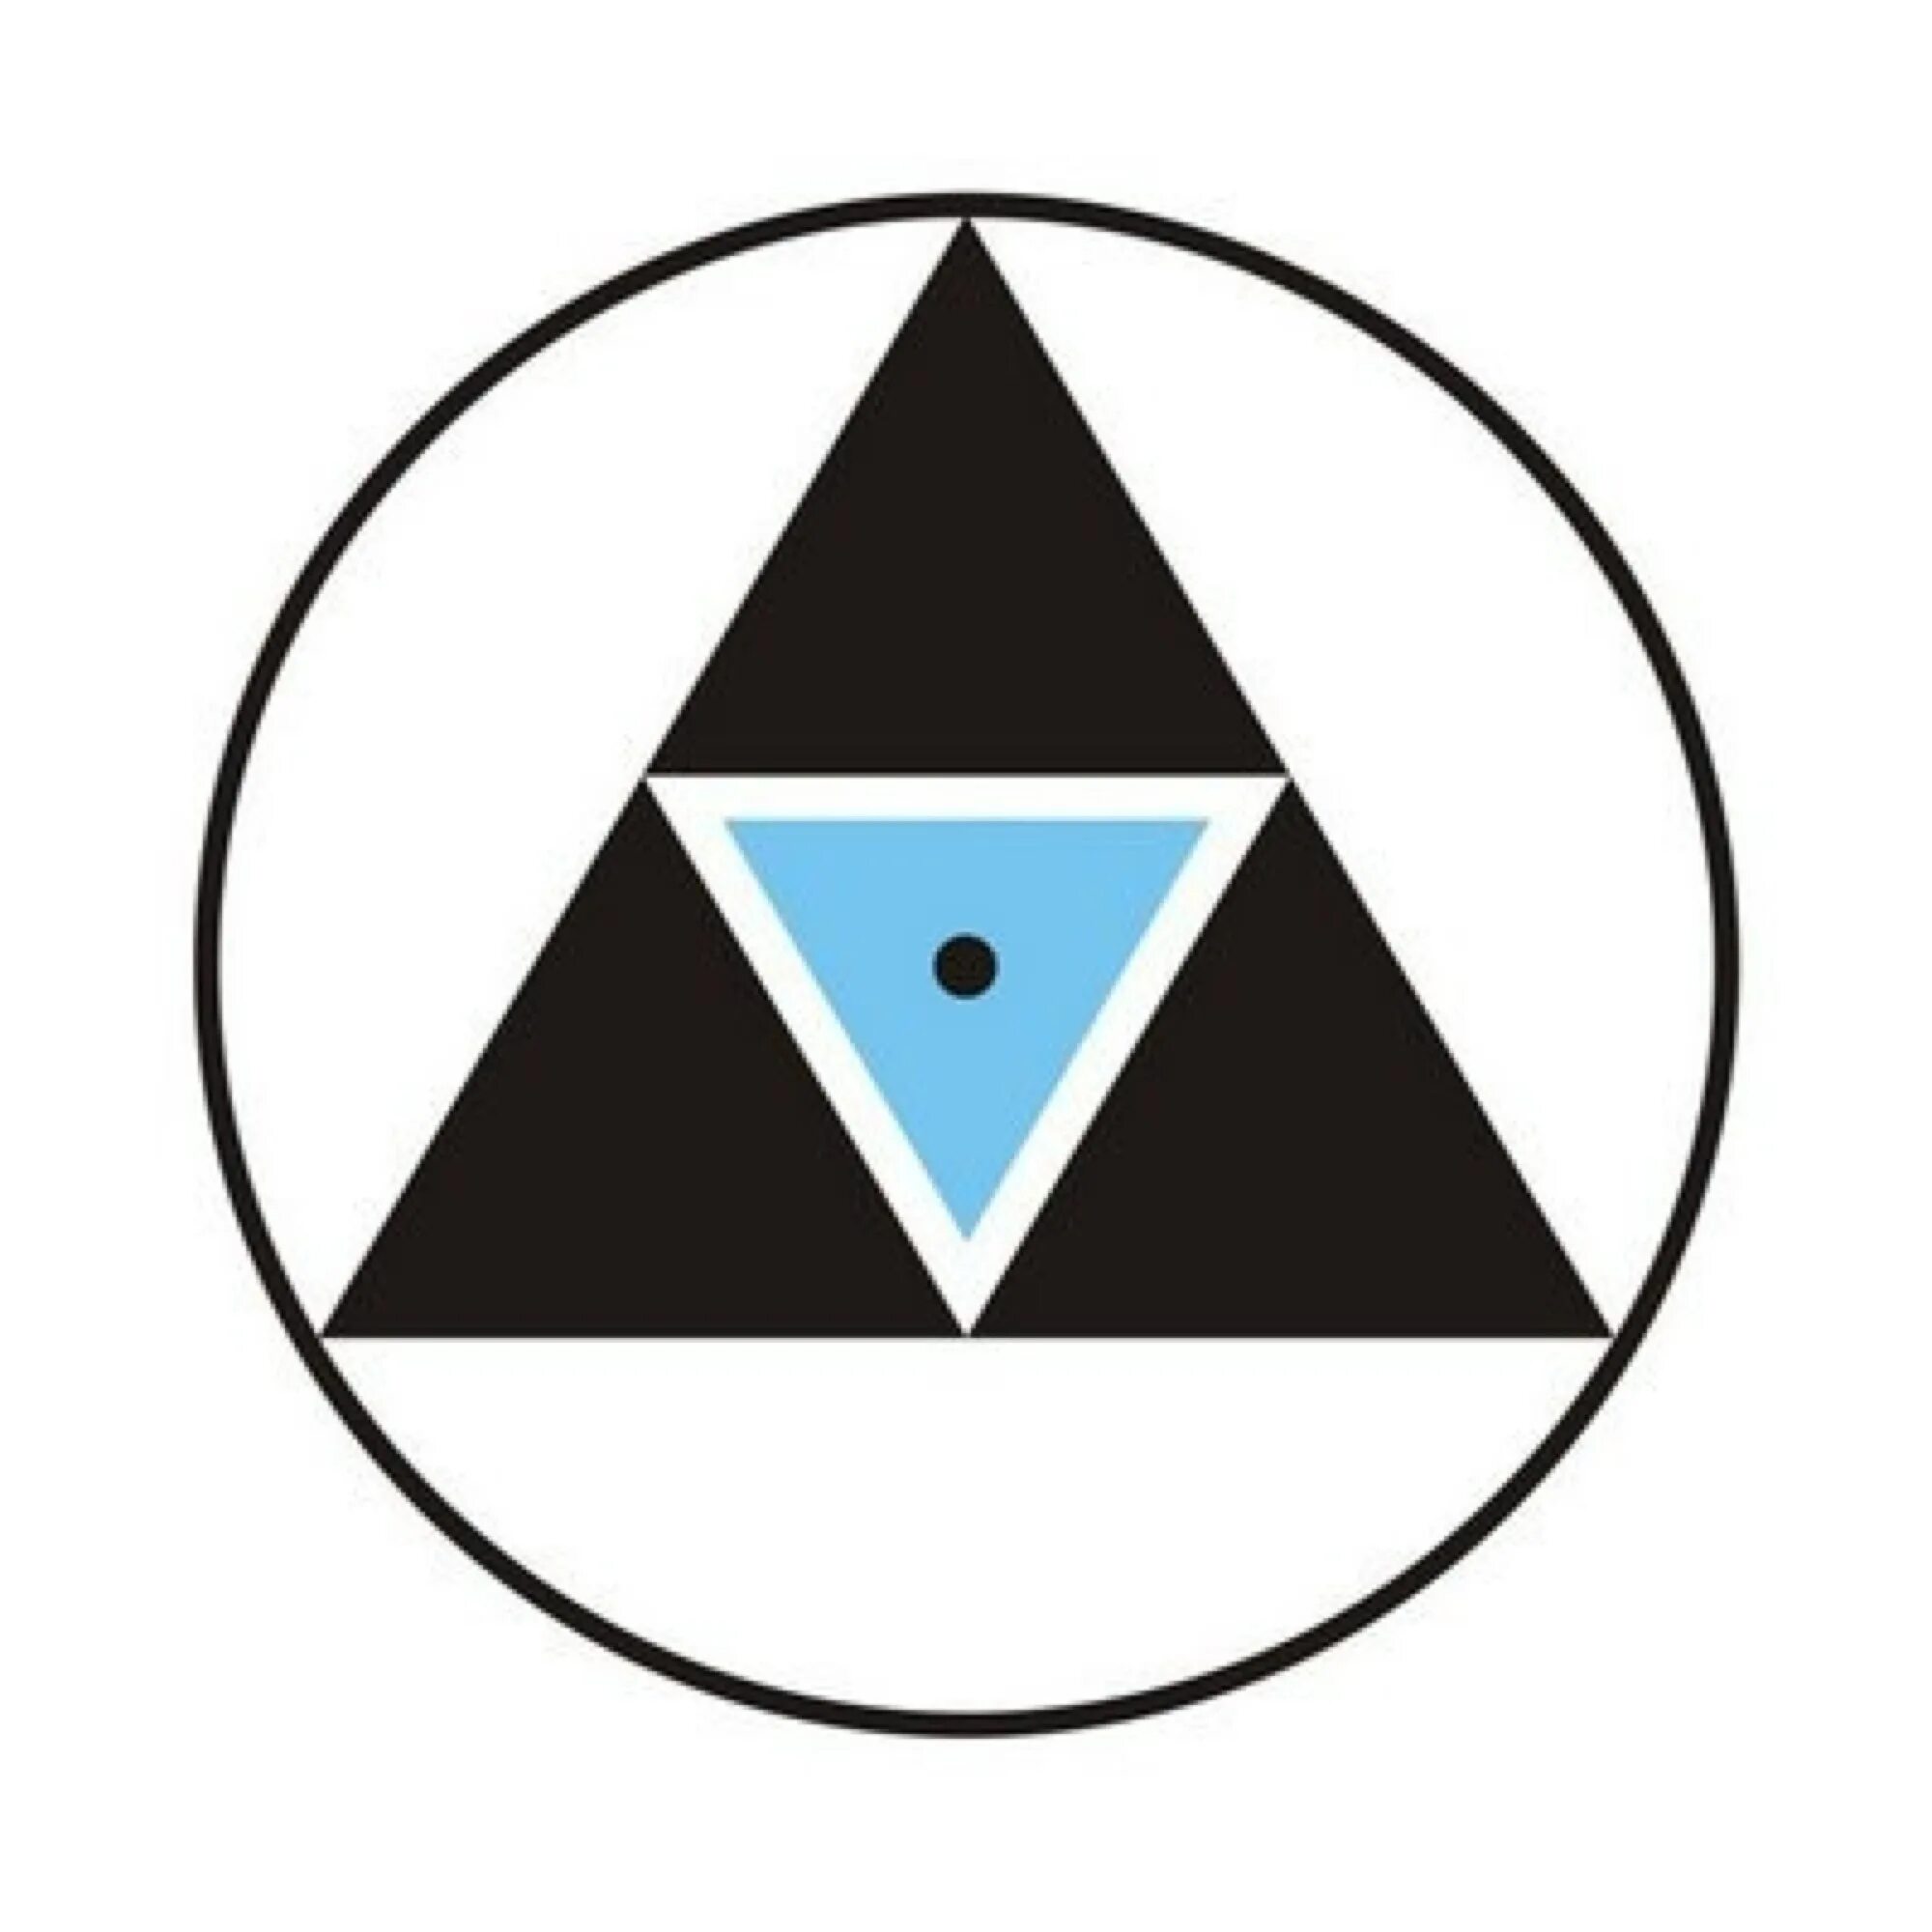 Синий треугольник в круге. Треугольник в круге. Круг с треугольником внутри. Треугольные символы. Перевернутый треугольник символ.